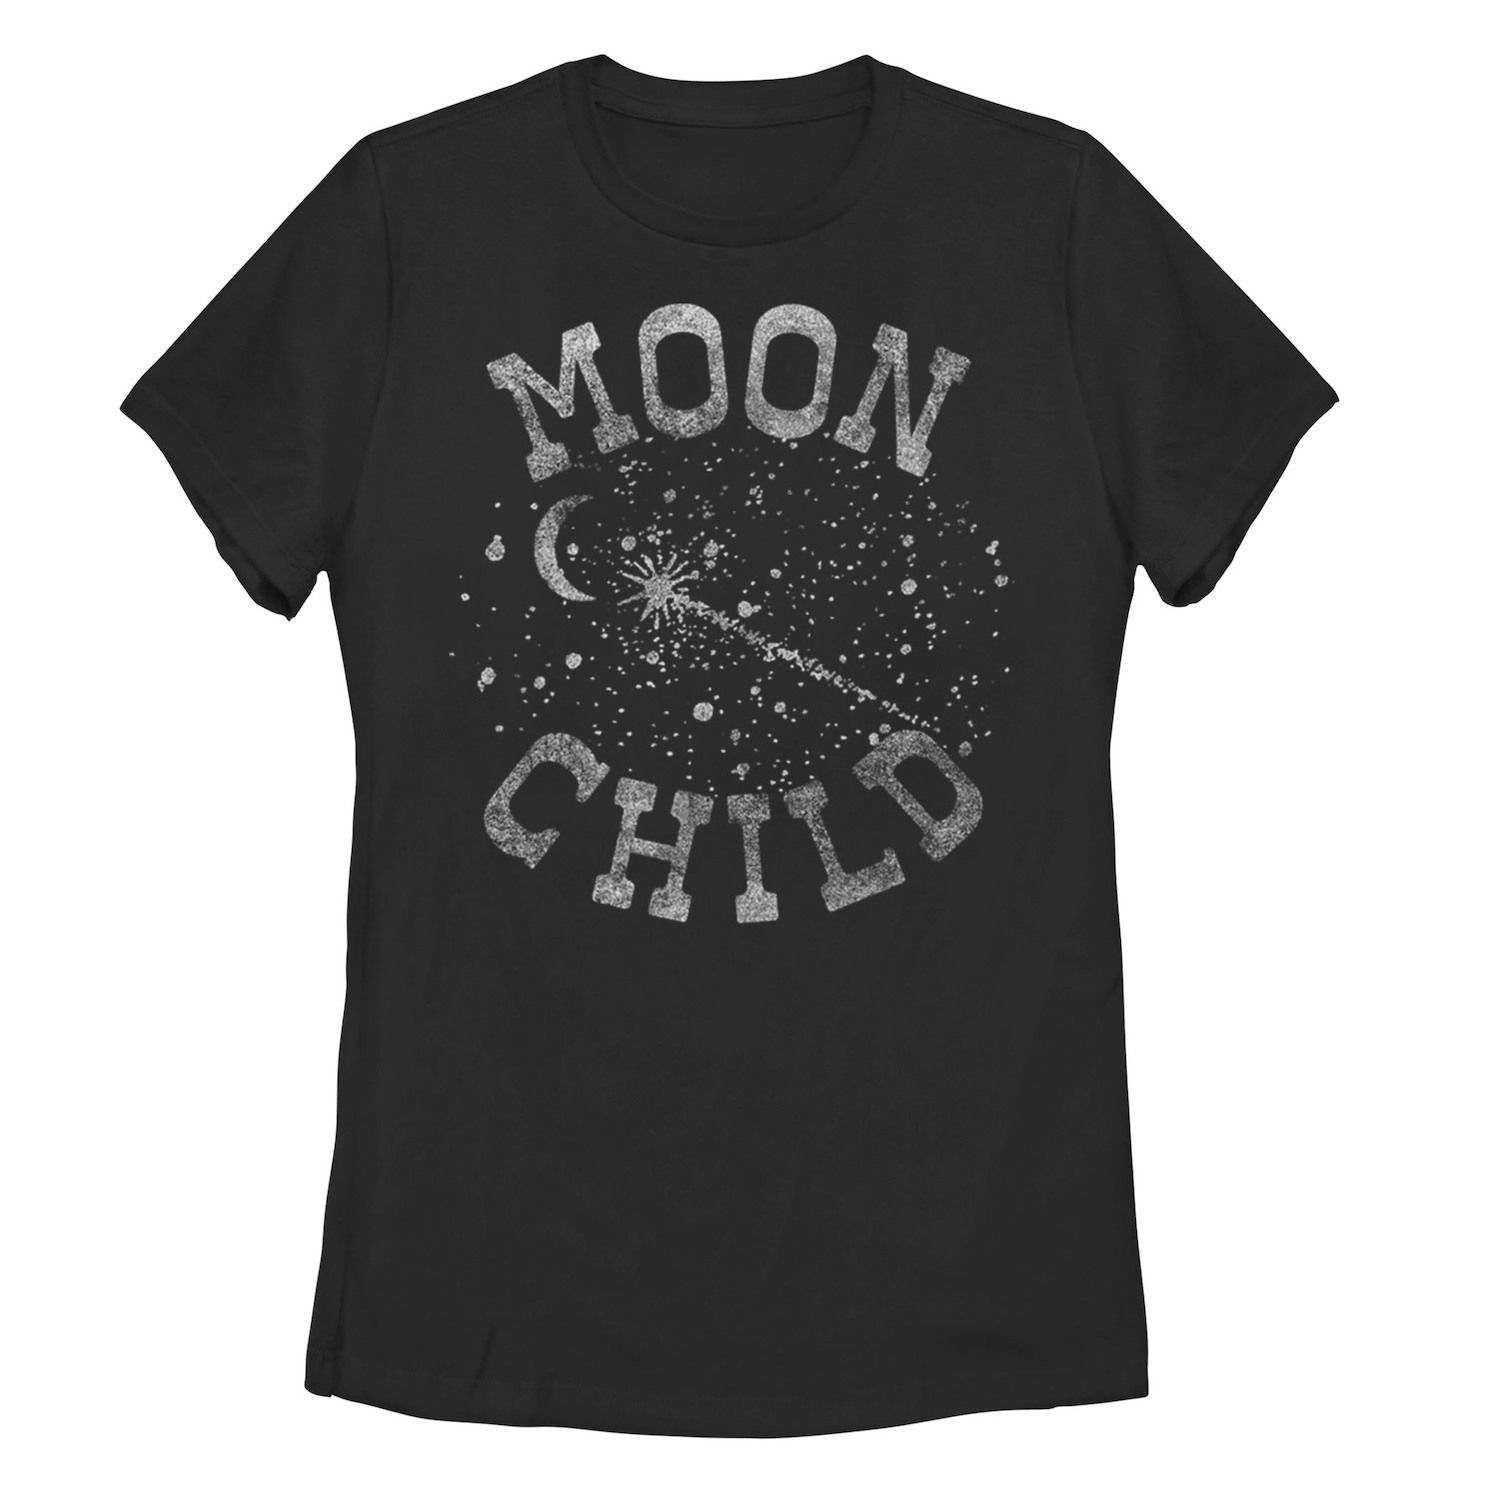 Детская футболка Moon Child с надписью Galactic, черный